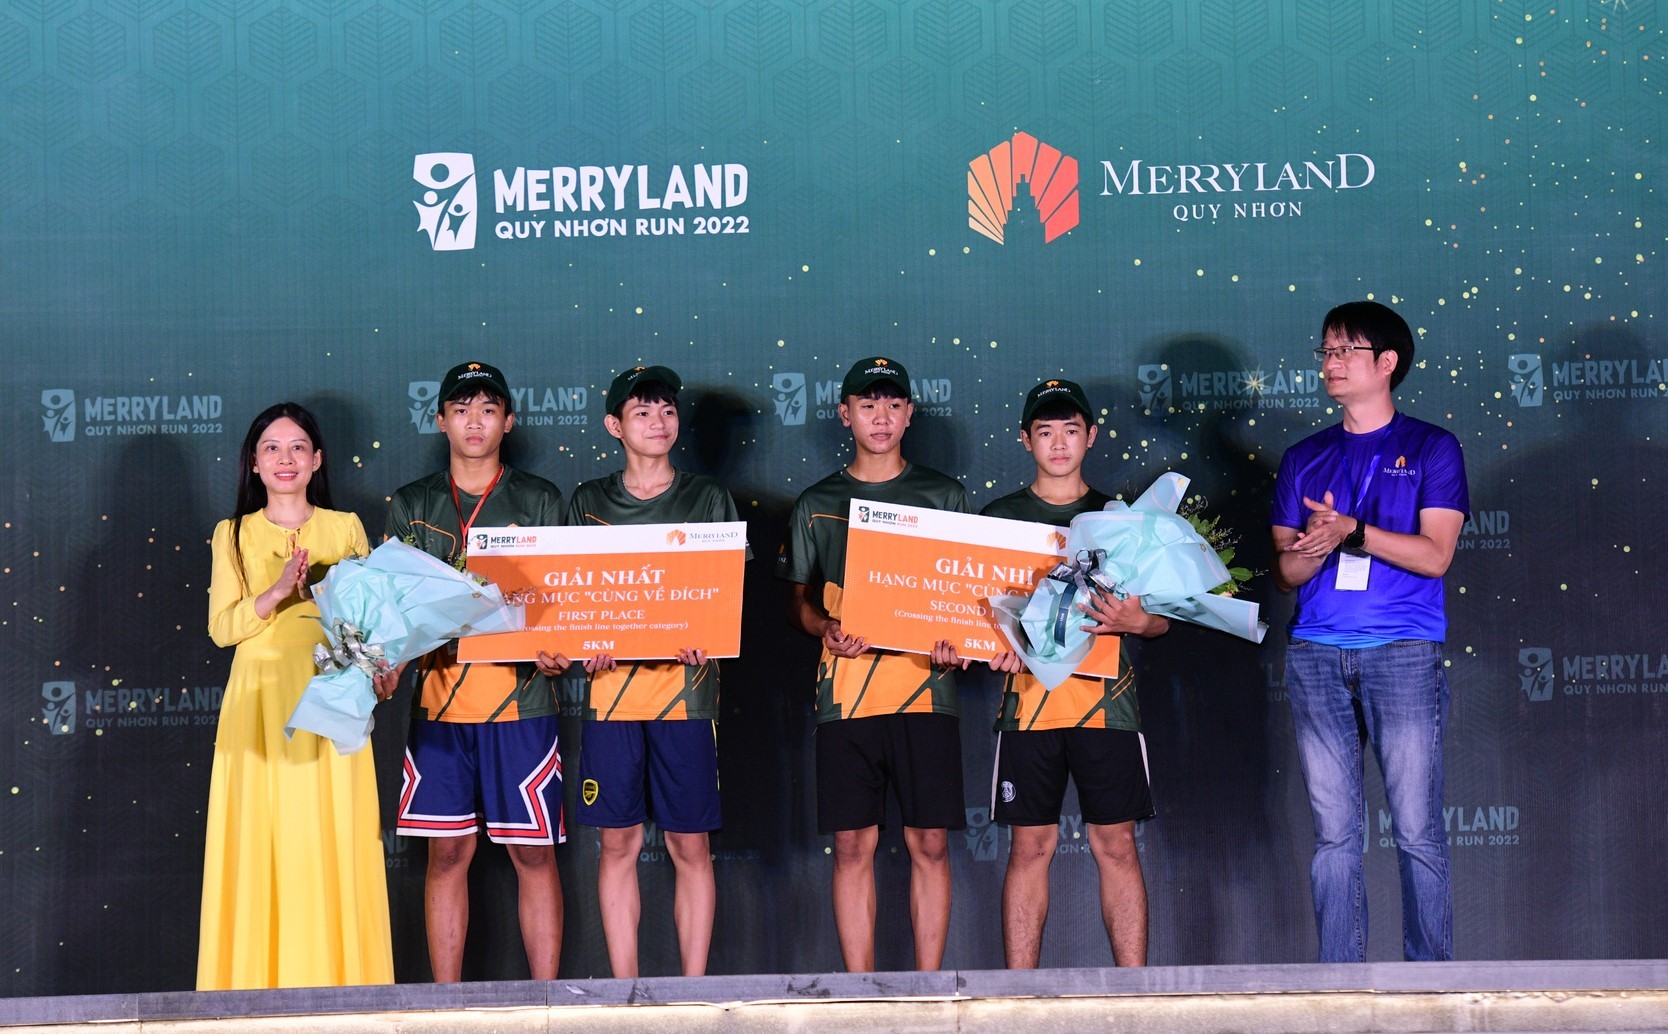 Quy Nhơn: Lần đầu có giải chạy quy mô hơn 3.000 người tại MerryLand Quy Nhơn Run 2022